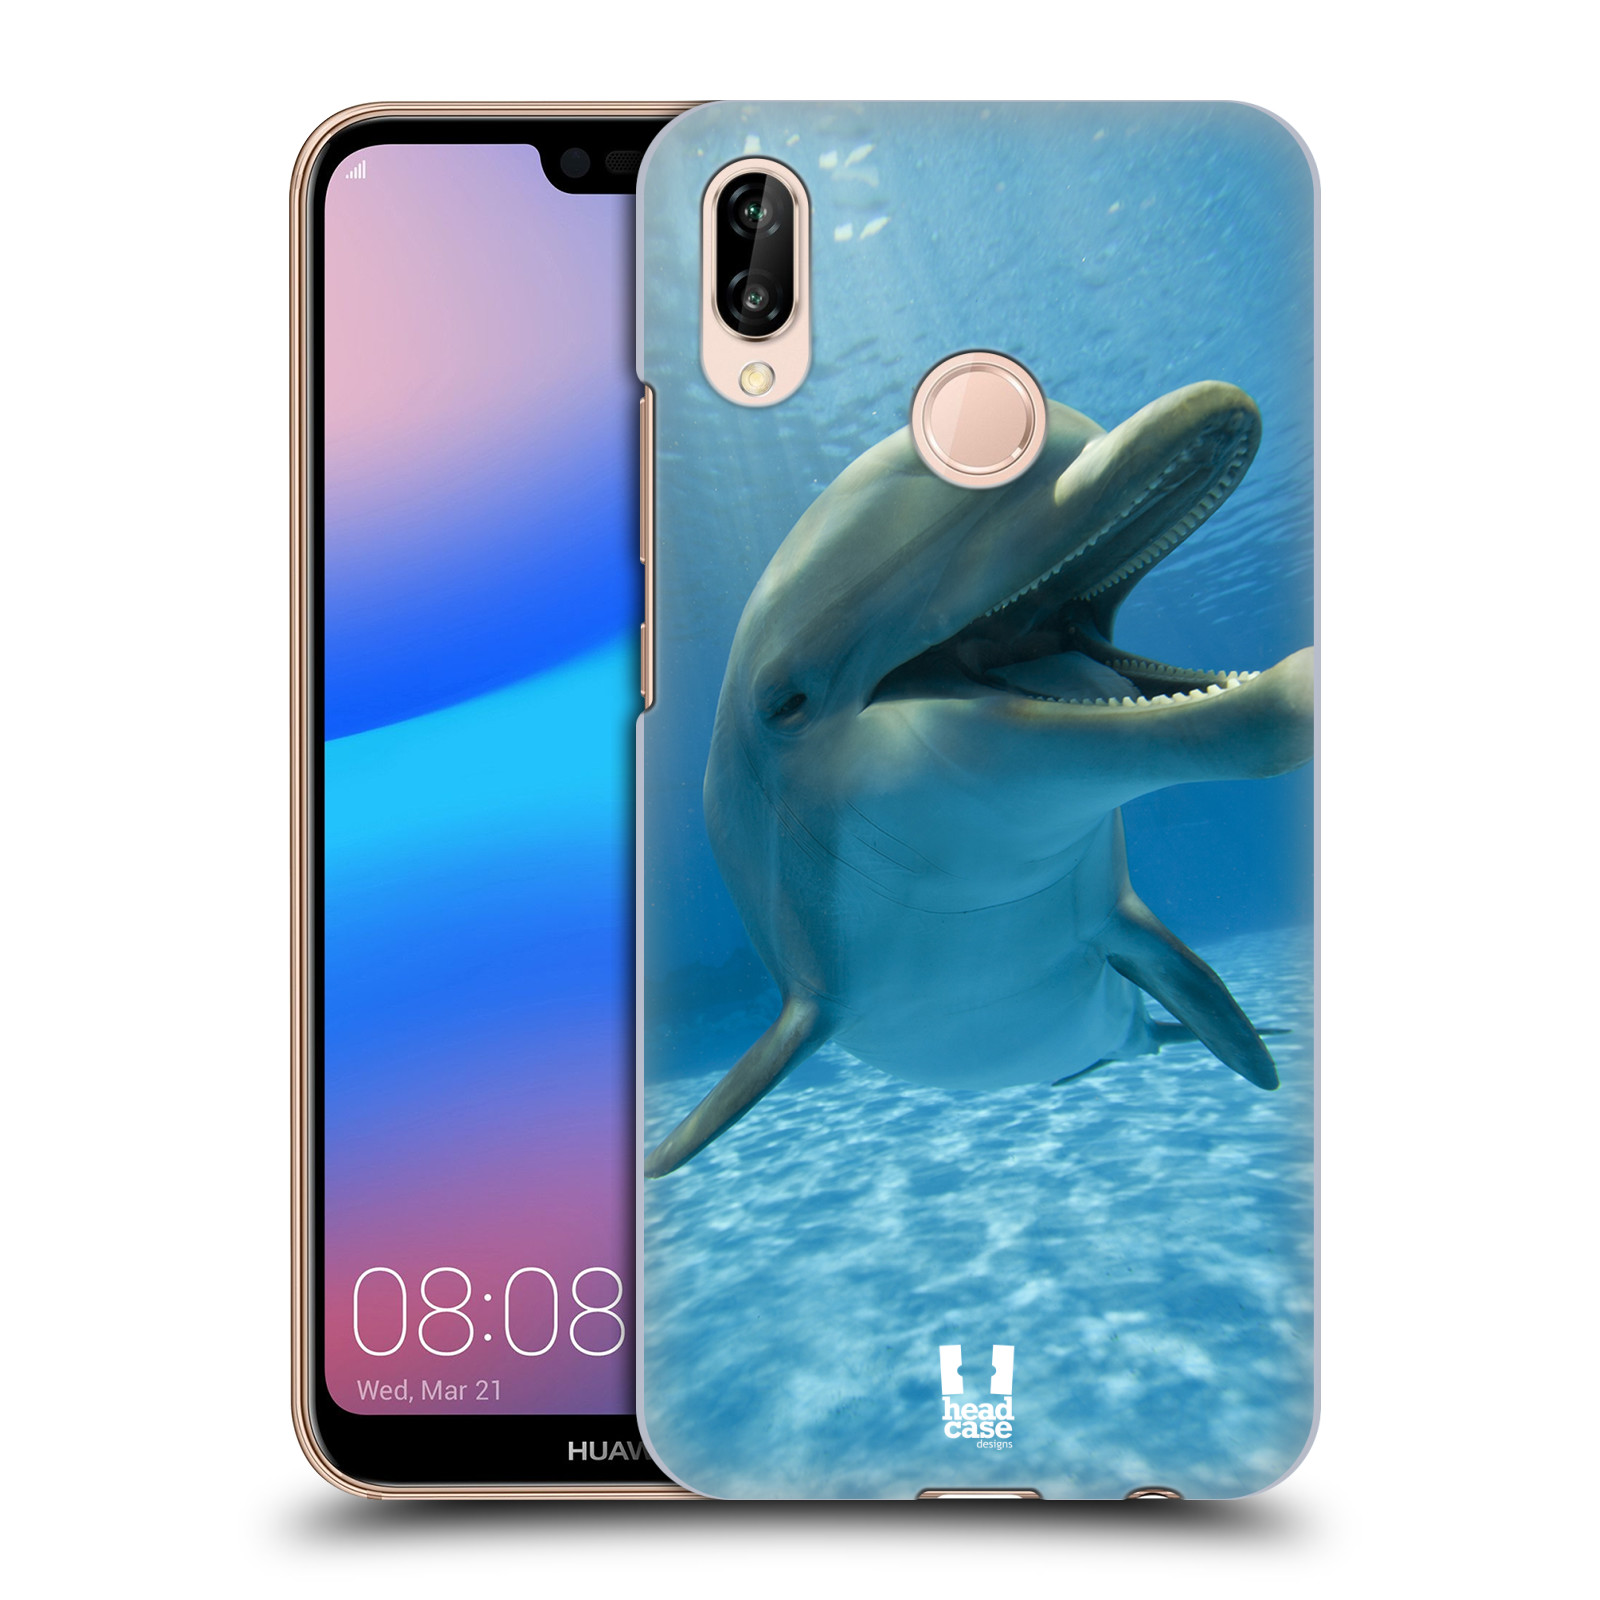 Zadní obal pro mobil Huawei P20 LITE - HEAD CASE - Svět zvířat delfín v moři